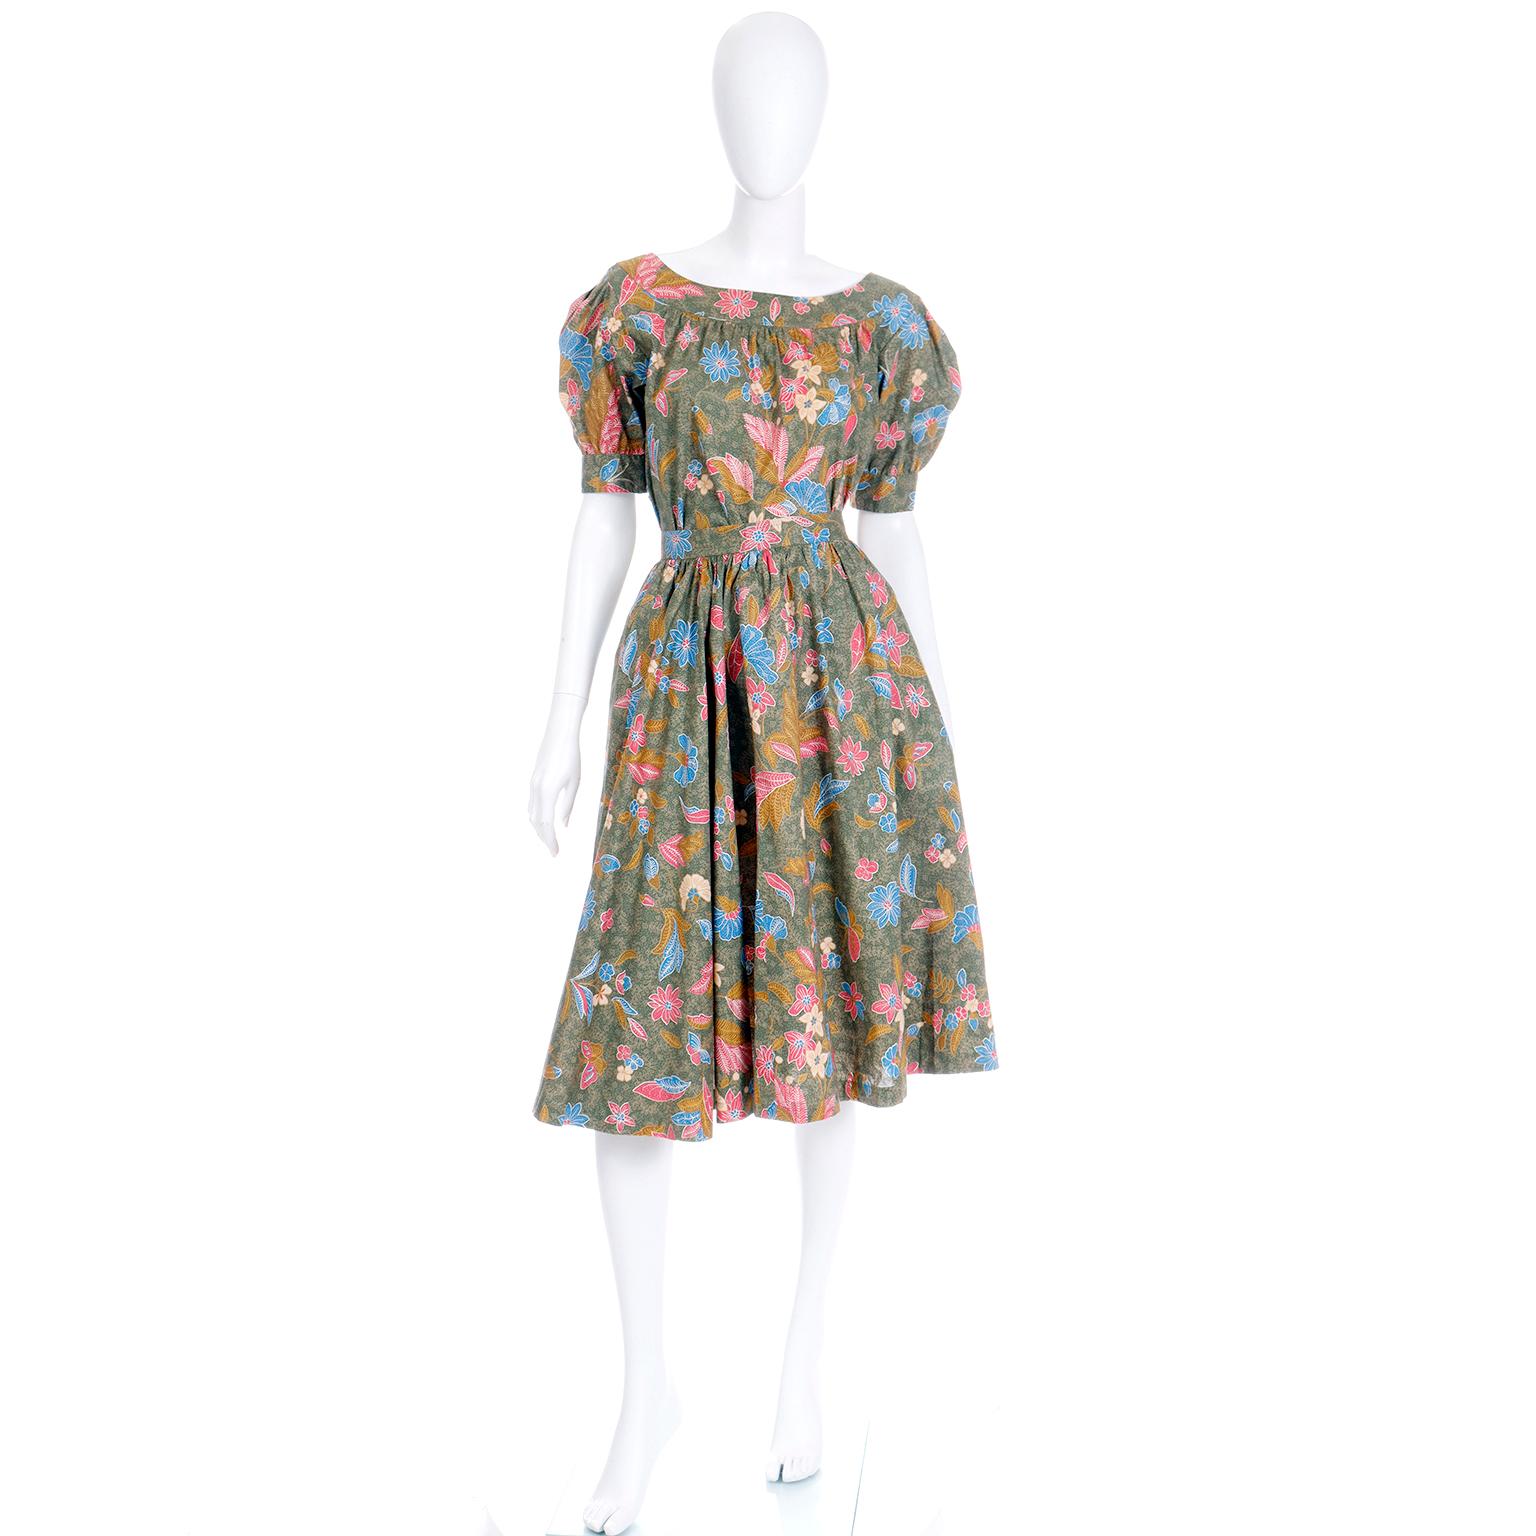 Dies ist ein wunderschönes zweiteiliges Tageskleid mit Blumen- und Schmetterlingsdruck aus der Yves Saint Laurent Frühjahr/Sommer 1986 Kollektion. Das Set aus Oberteil und Rock sieht zusammen getragen wie ein Kleid aus, kann aber auch einzeln